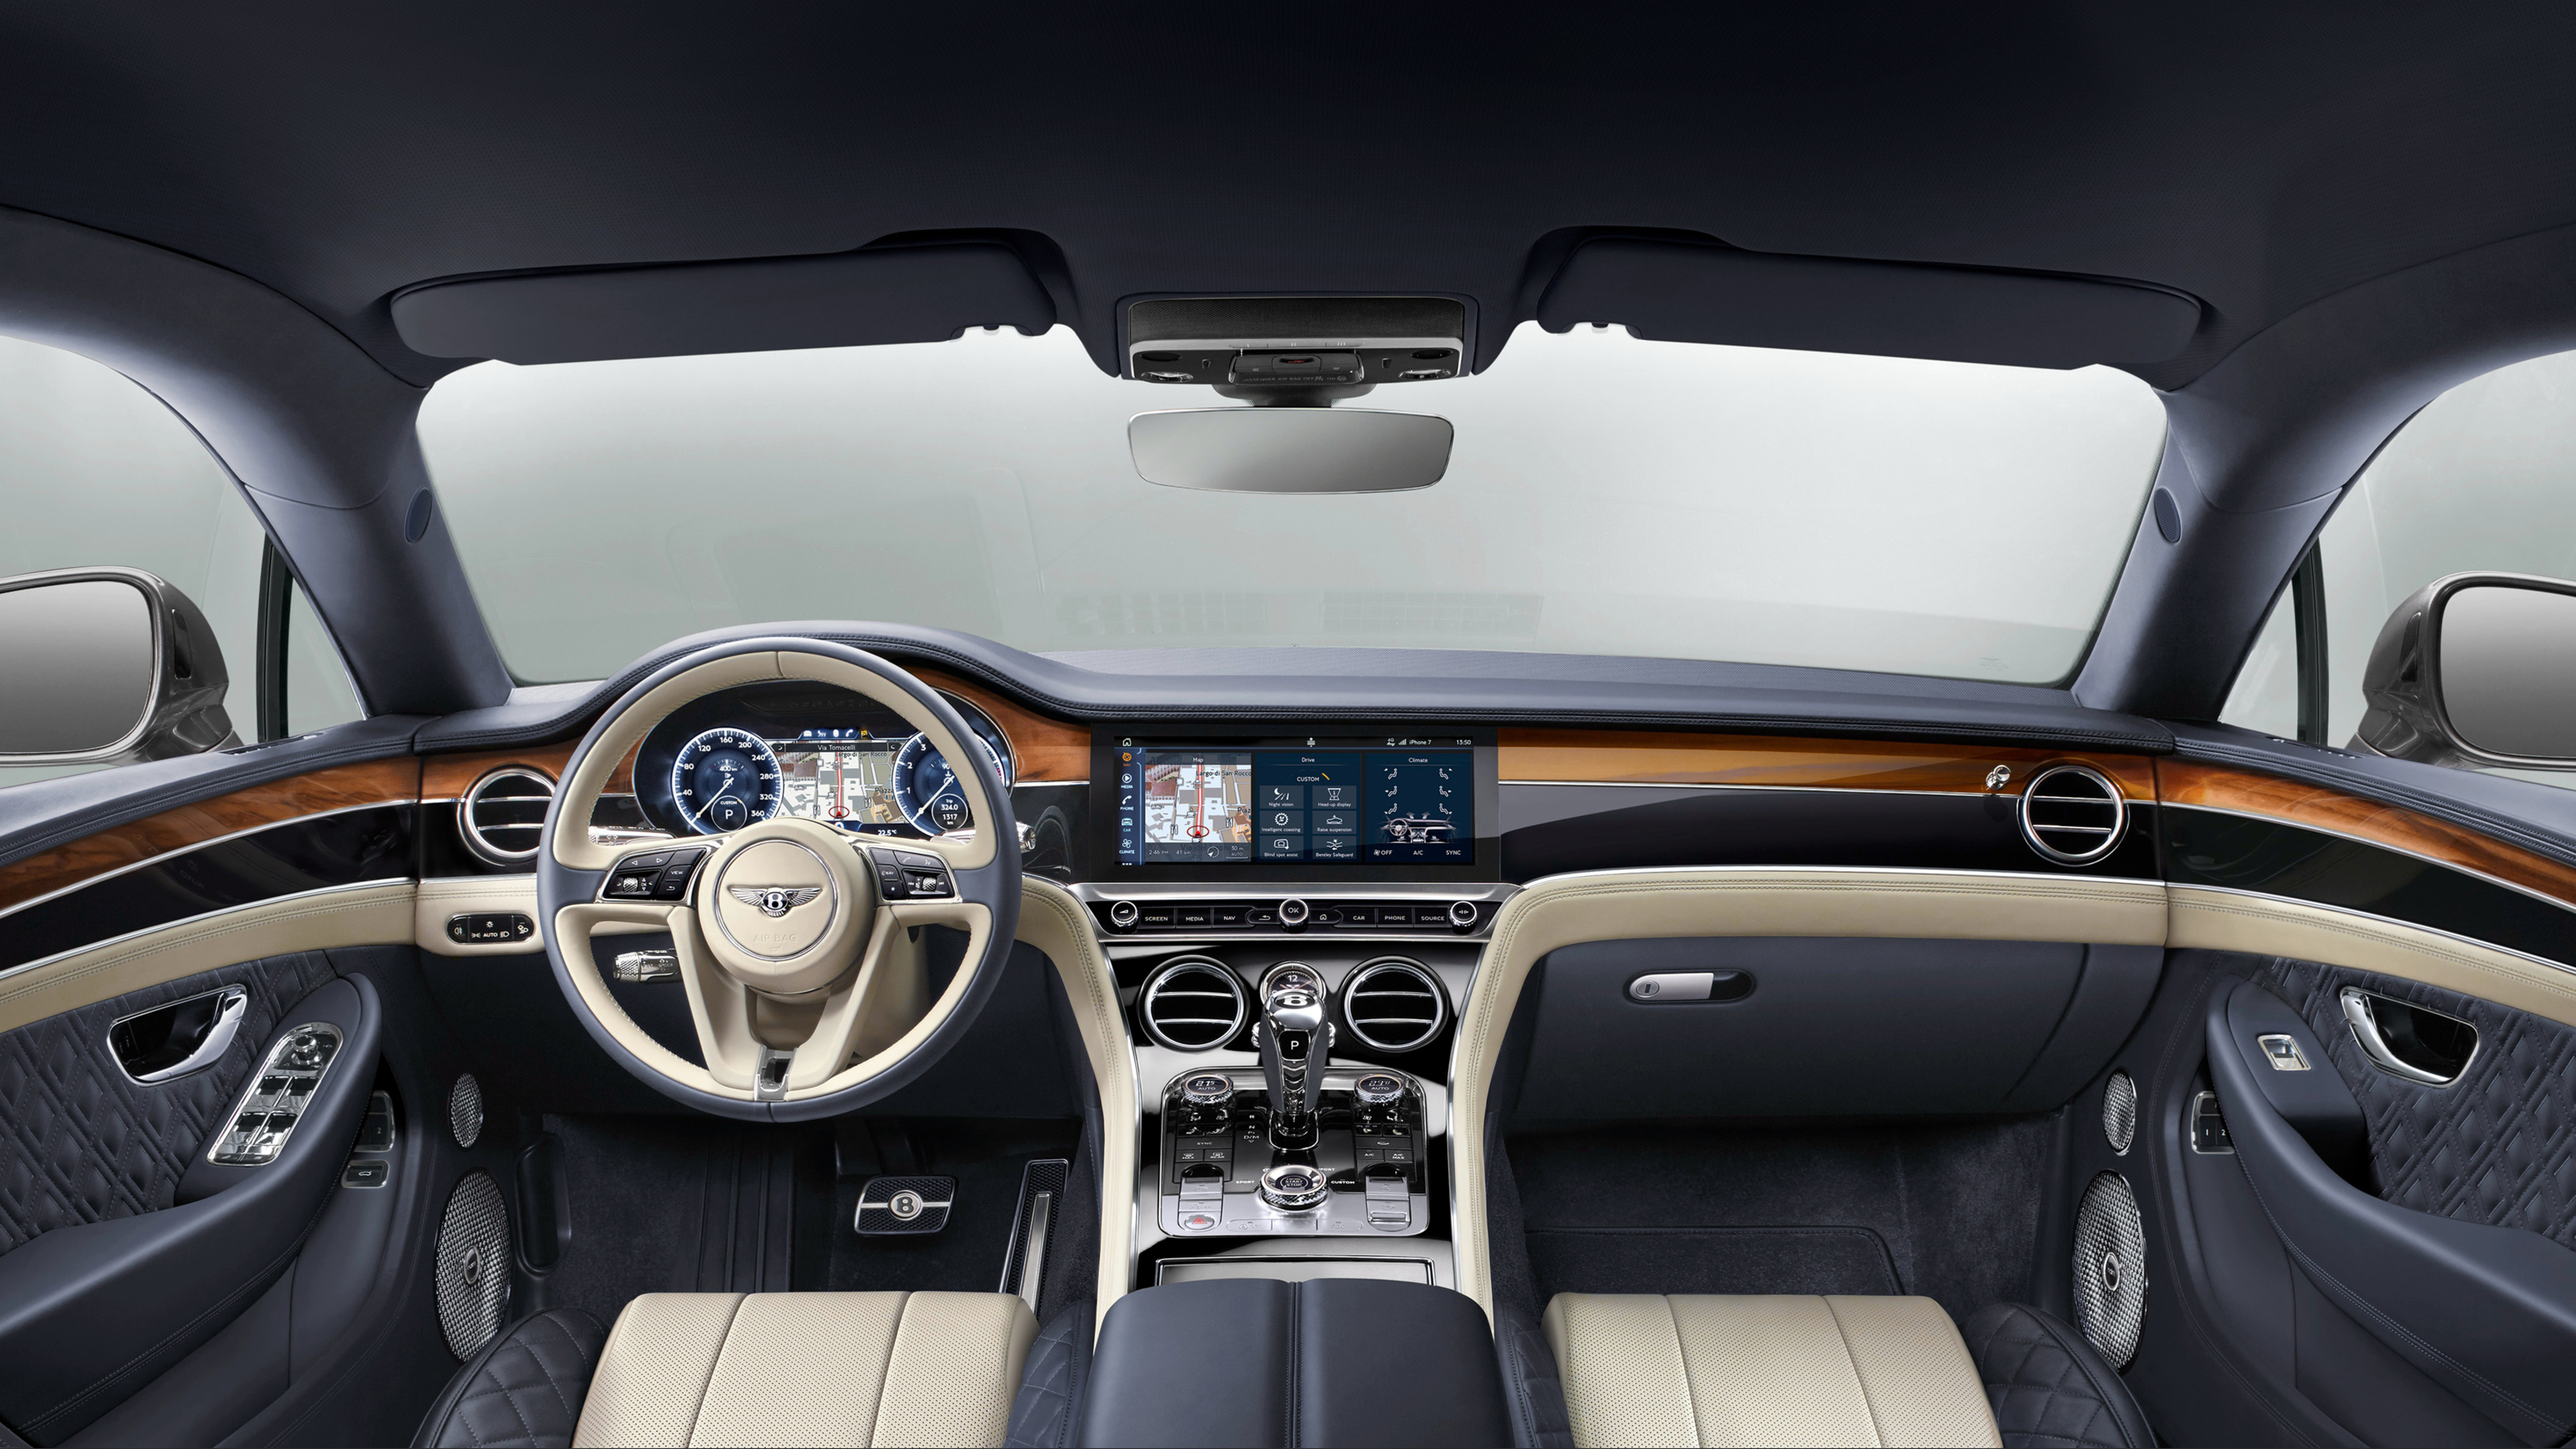 bentley continental gt 2017 interior 1539106949 - Bentley Continental GT 2017 Interior - hd-wallpapers, bentley wallpapers, bentley continental wallpapers, 4k-wallpapers, 2017 cars wallpapers